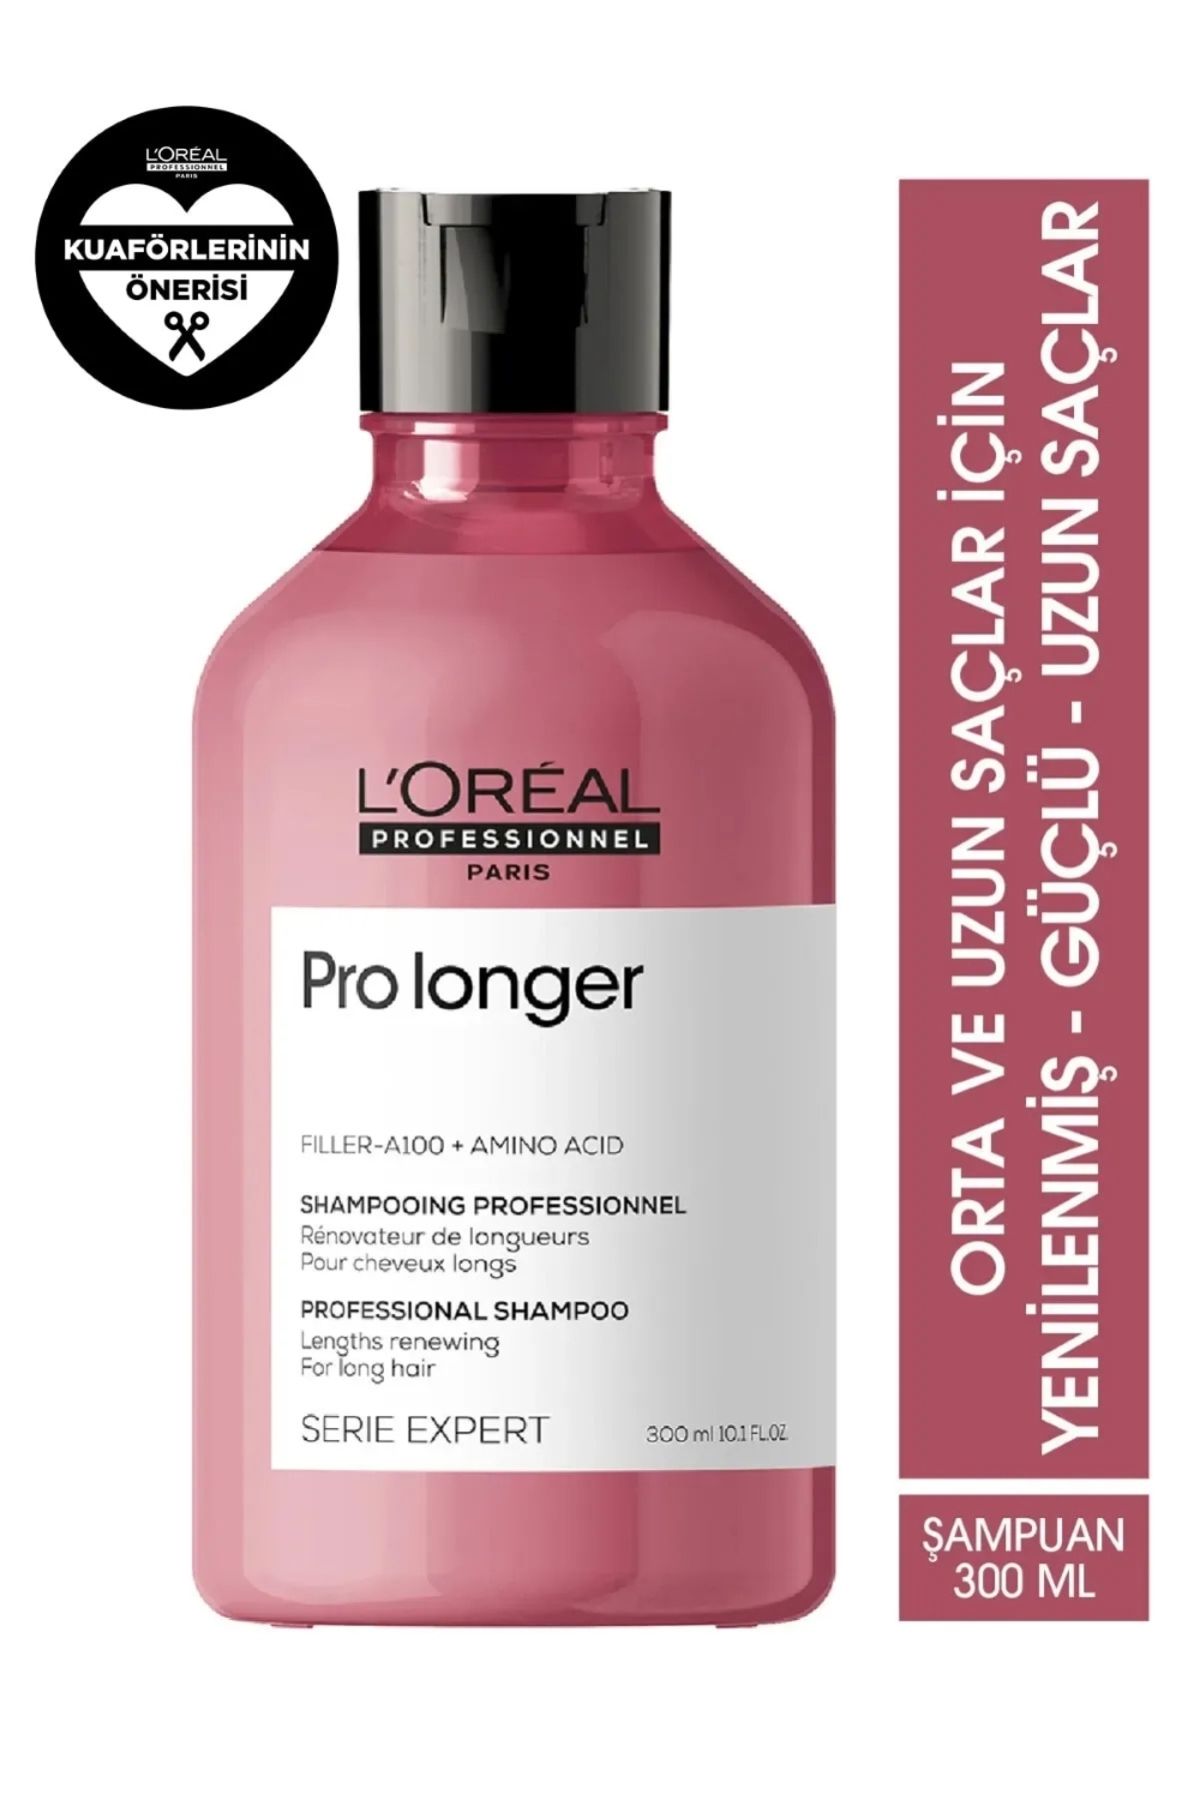 L'oreal Professionnel LOREAL Pro Longer Uzun Saçlar İçin Yenileyici Bakım Şampuanı 300ml/10.01 FL.OZ-GEM6AS5F4AS11-A1F21